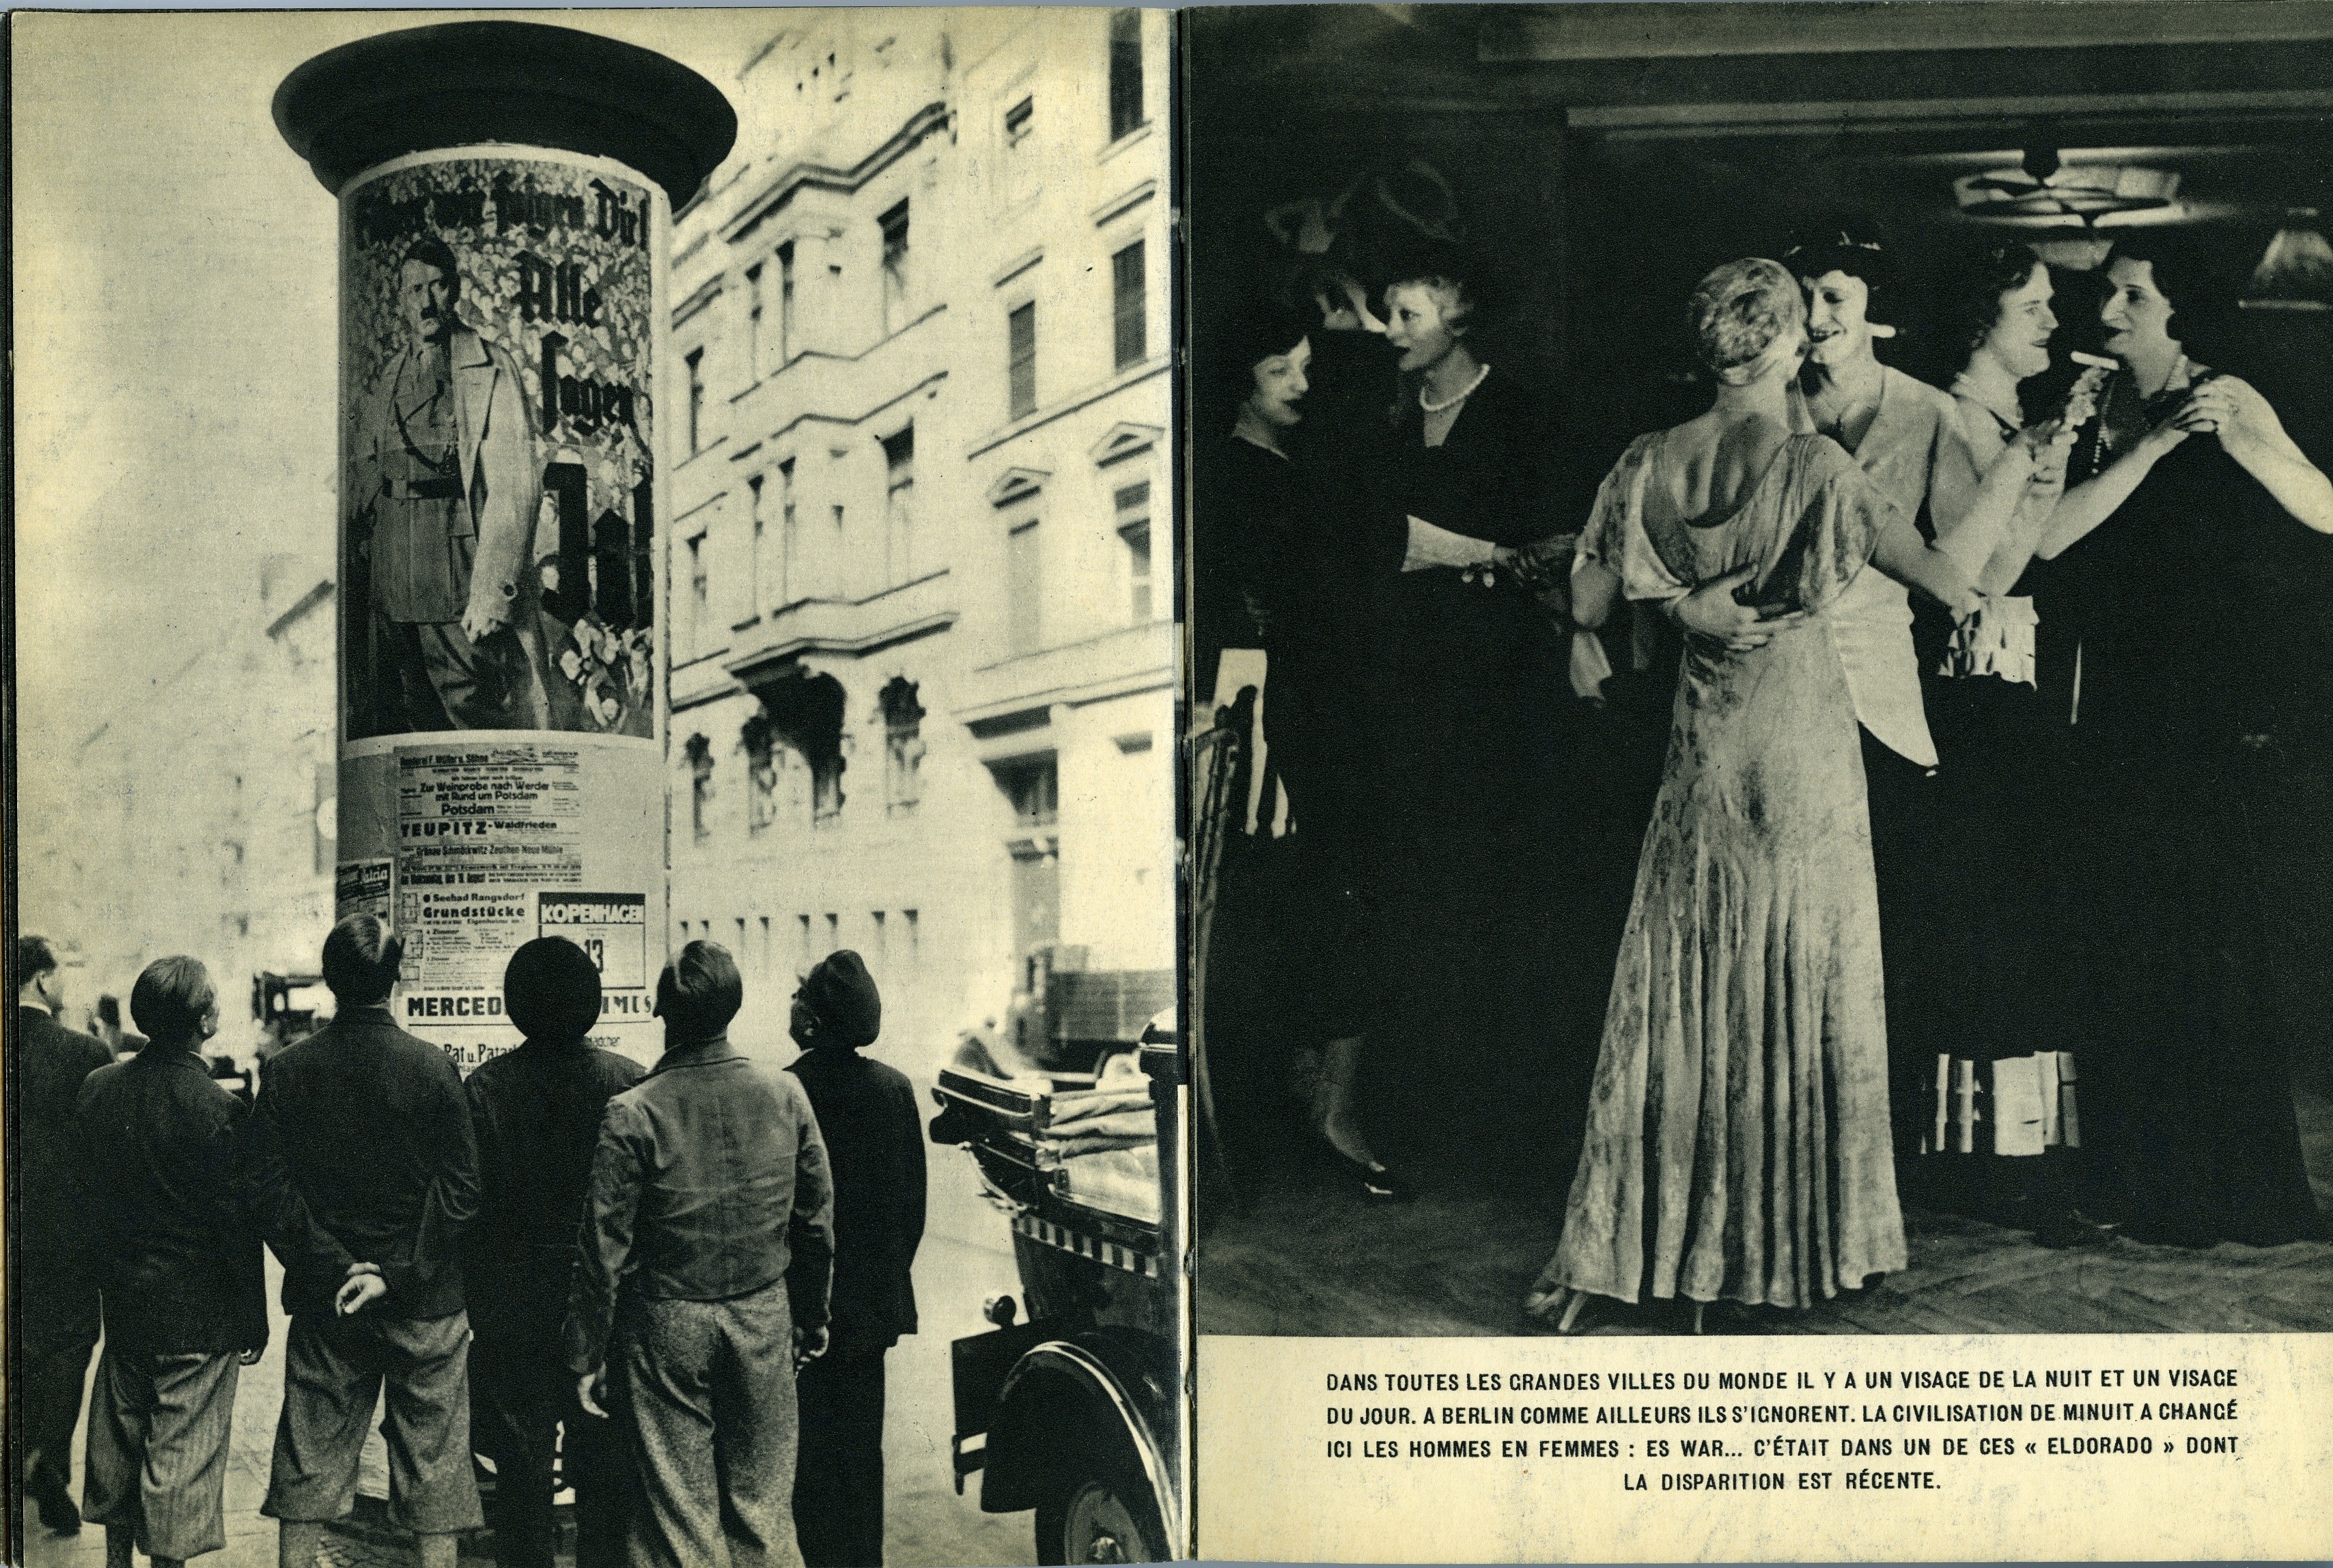 Берлин дневной и Берлин ночной. Полуночная культура изменила мужчин на женщин. Из фотокниги «Берлин», 1930-е. Автор Пьер Мак-Орлан